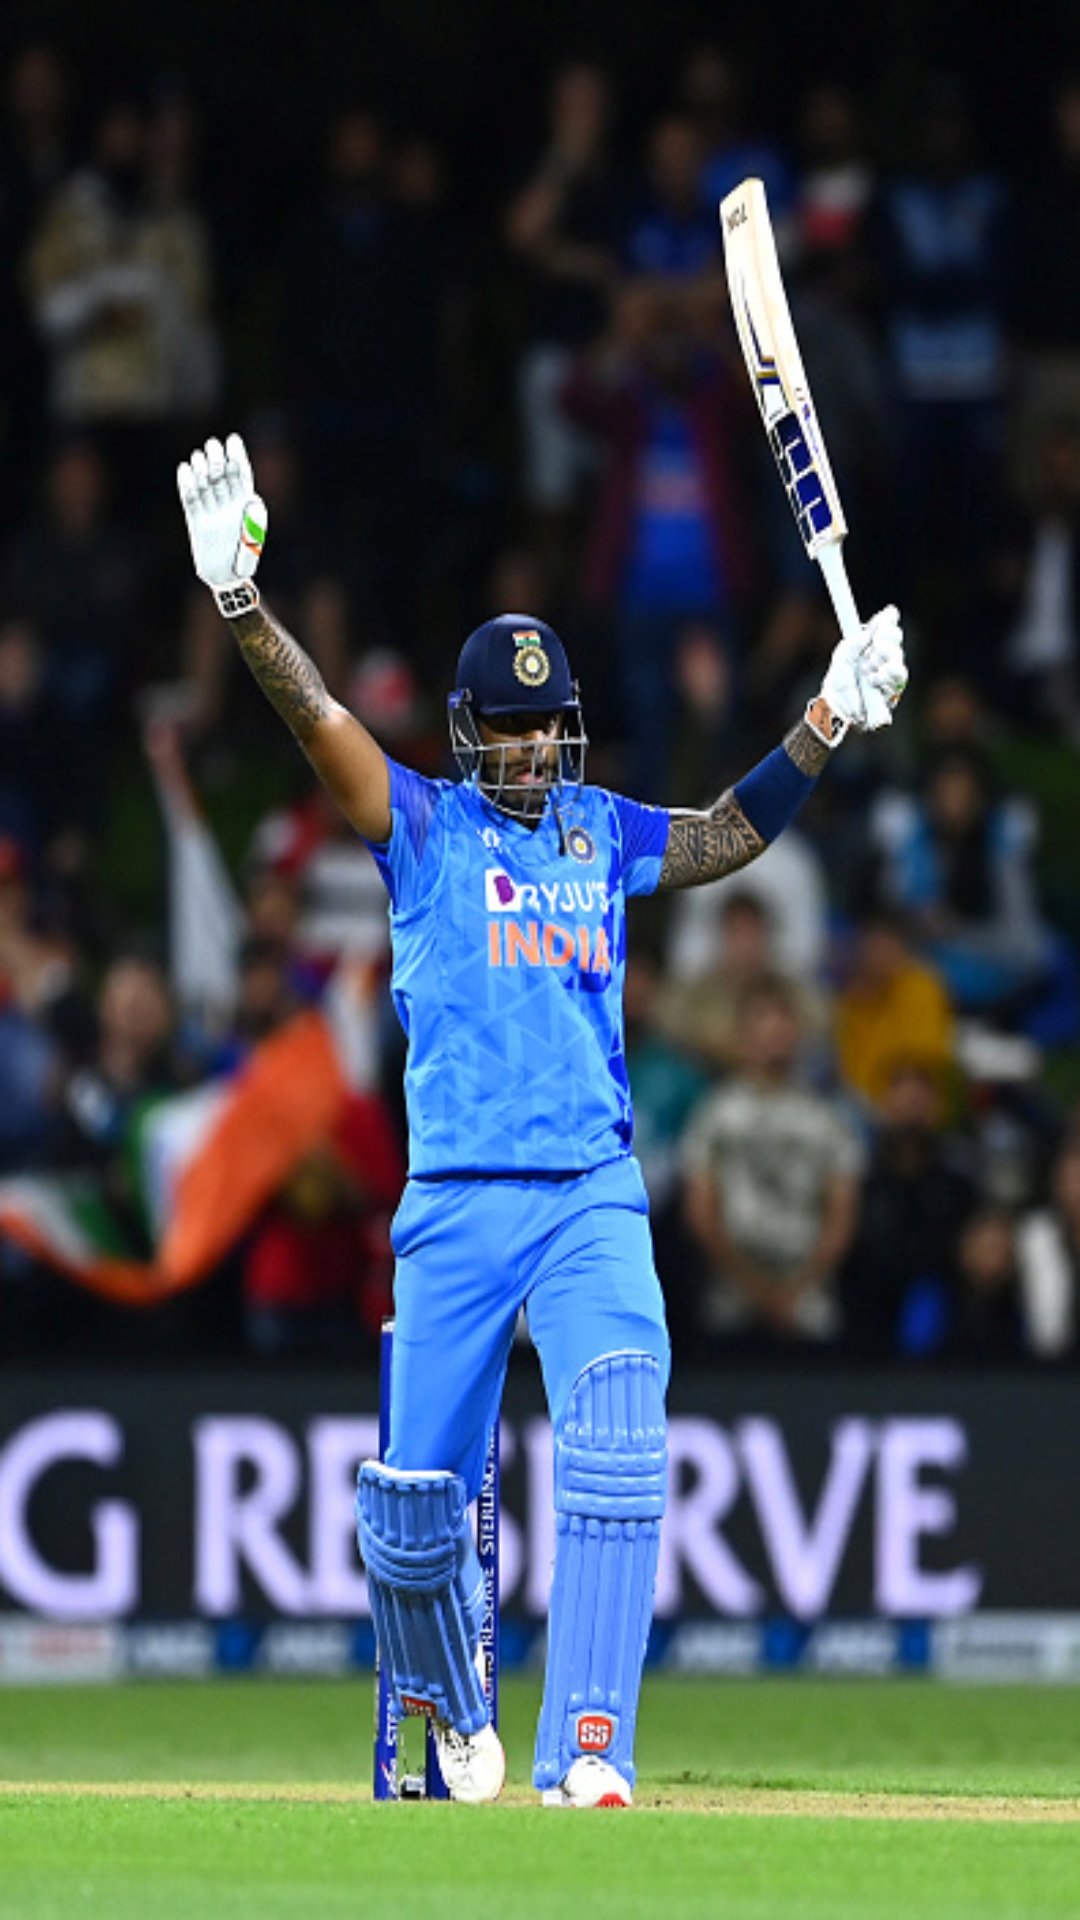 IND vs NZ: भारत vs न्यूजीलैंड टी20 सीरीज में सबसे ज्यादा स्ट्राइक रेट से रन बनाने वाले टॉप 5 बल्लेबाज